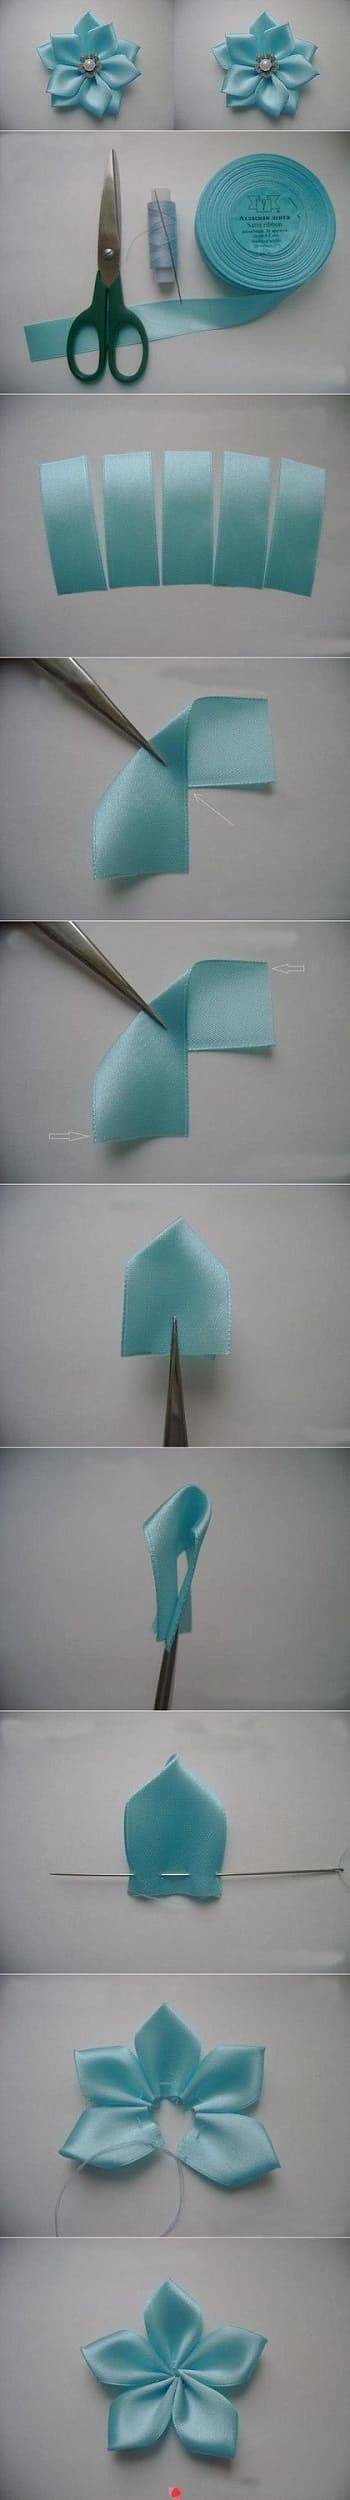 como fazer flor de tecido com cetim